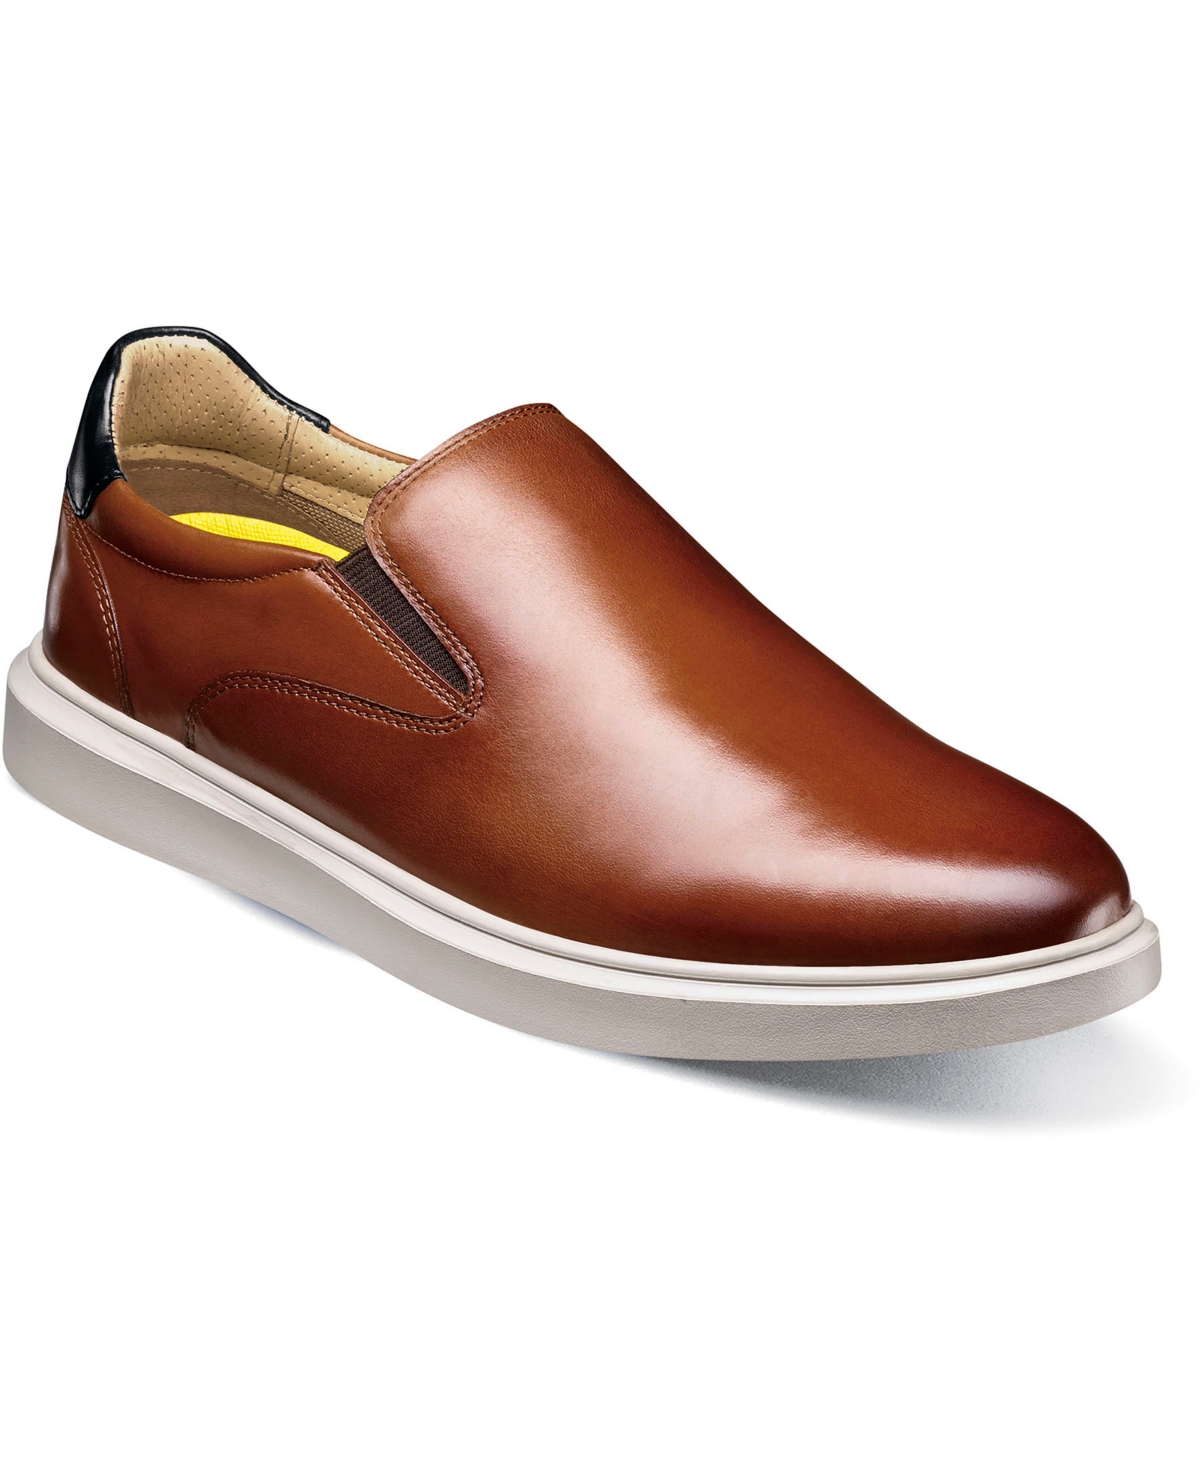 Men's Social Plain Toe Slip On Sneaker - Cognac Mlt